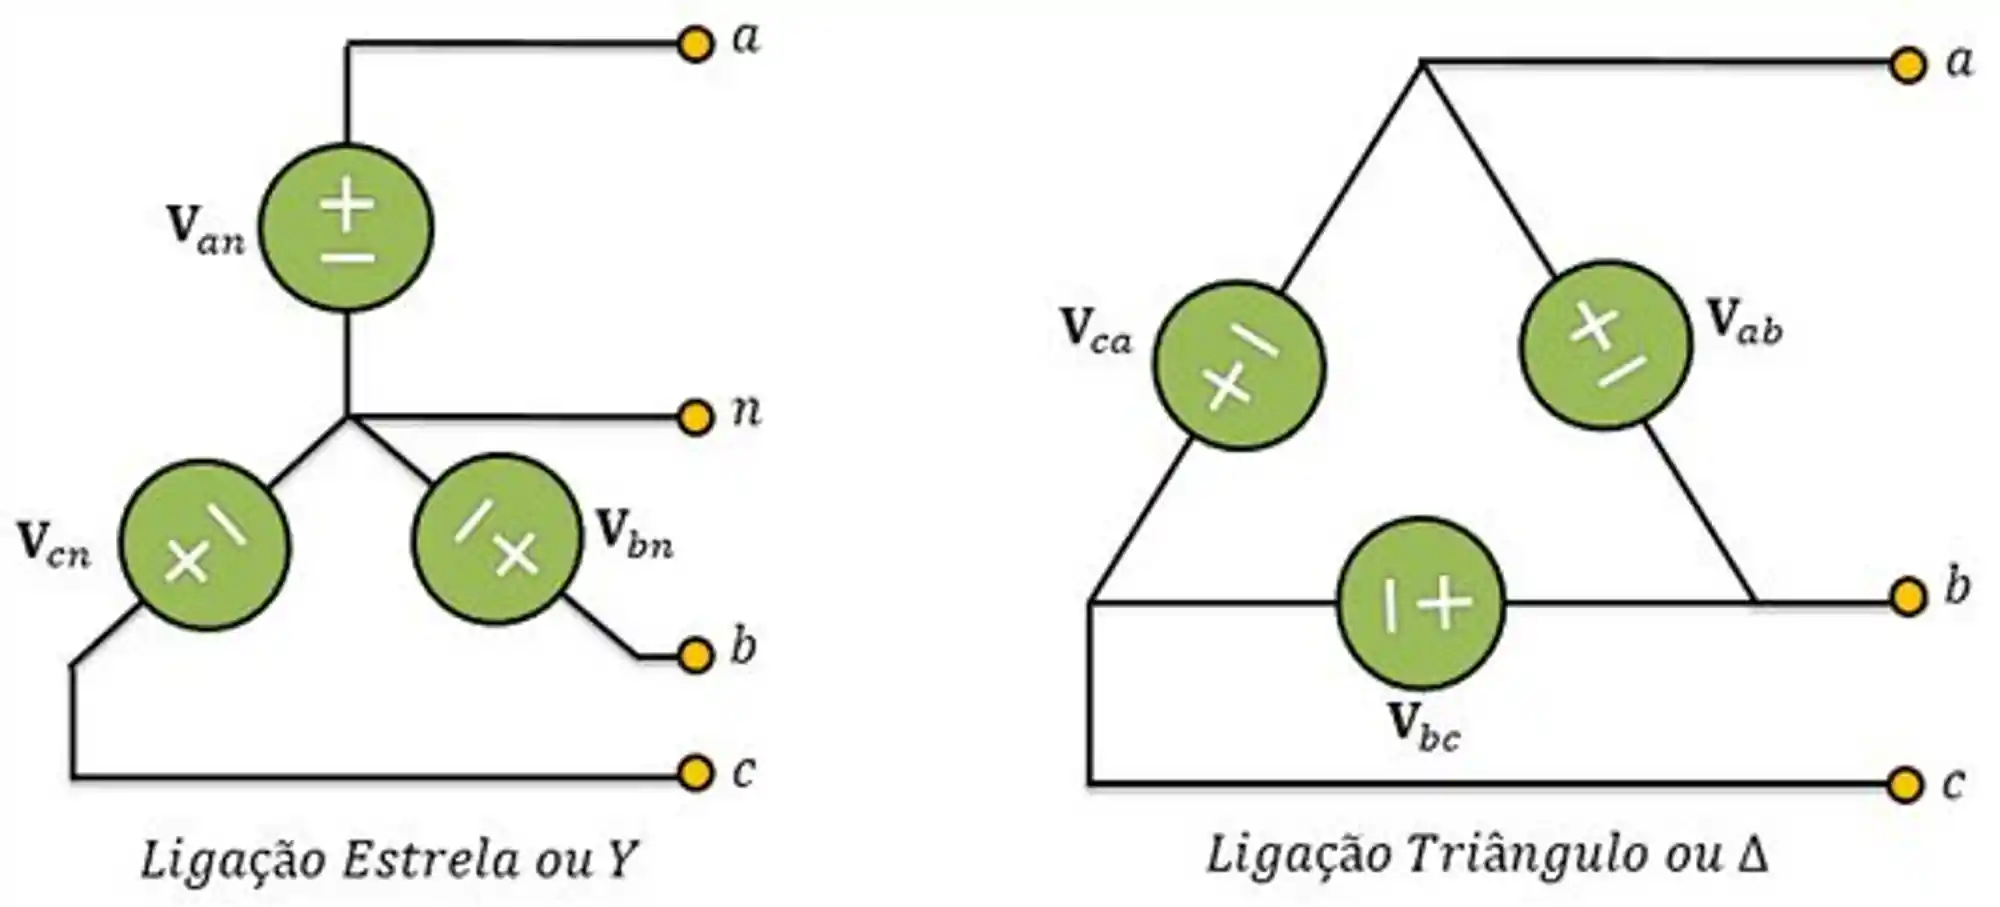 Ligação estrela e triângulo em um sistema trifásico.